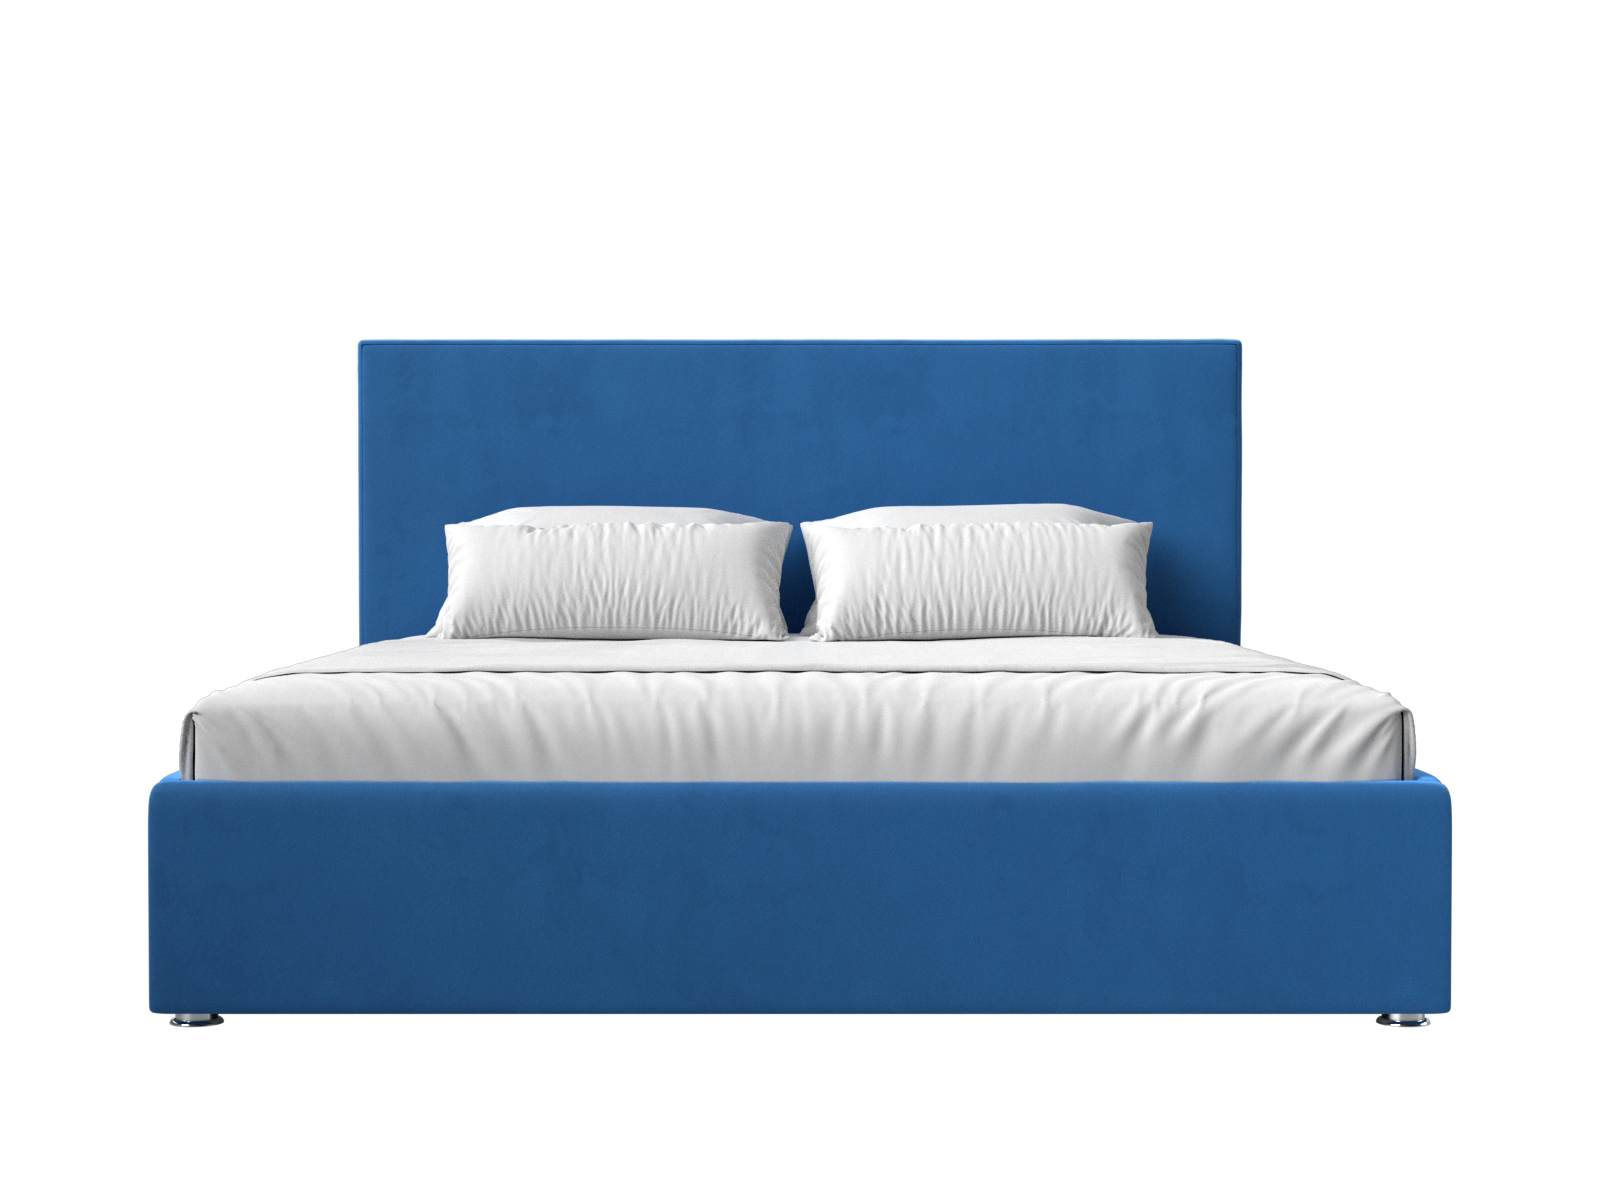 Интерьерная кровать Кариба 200 (Голубой)